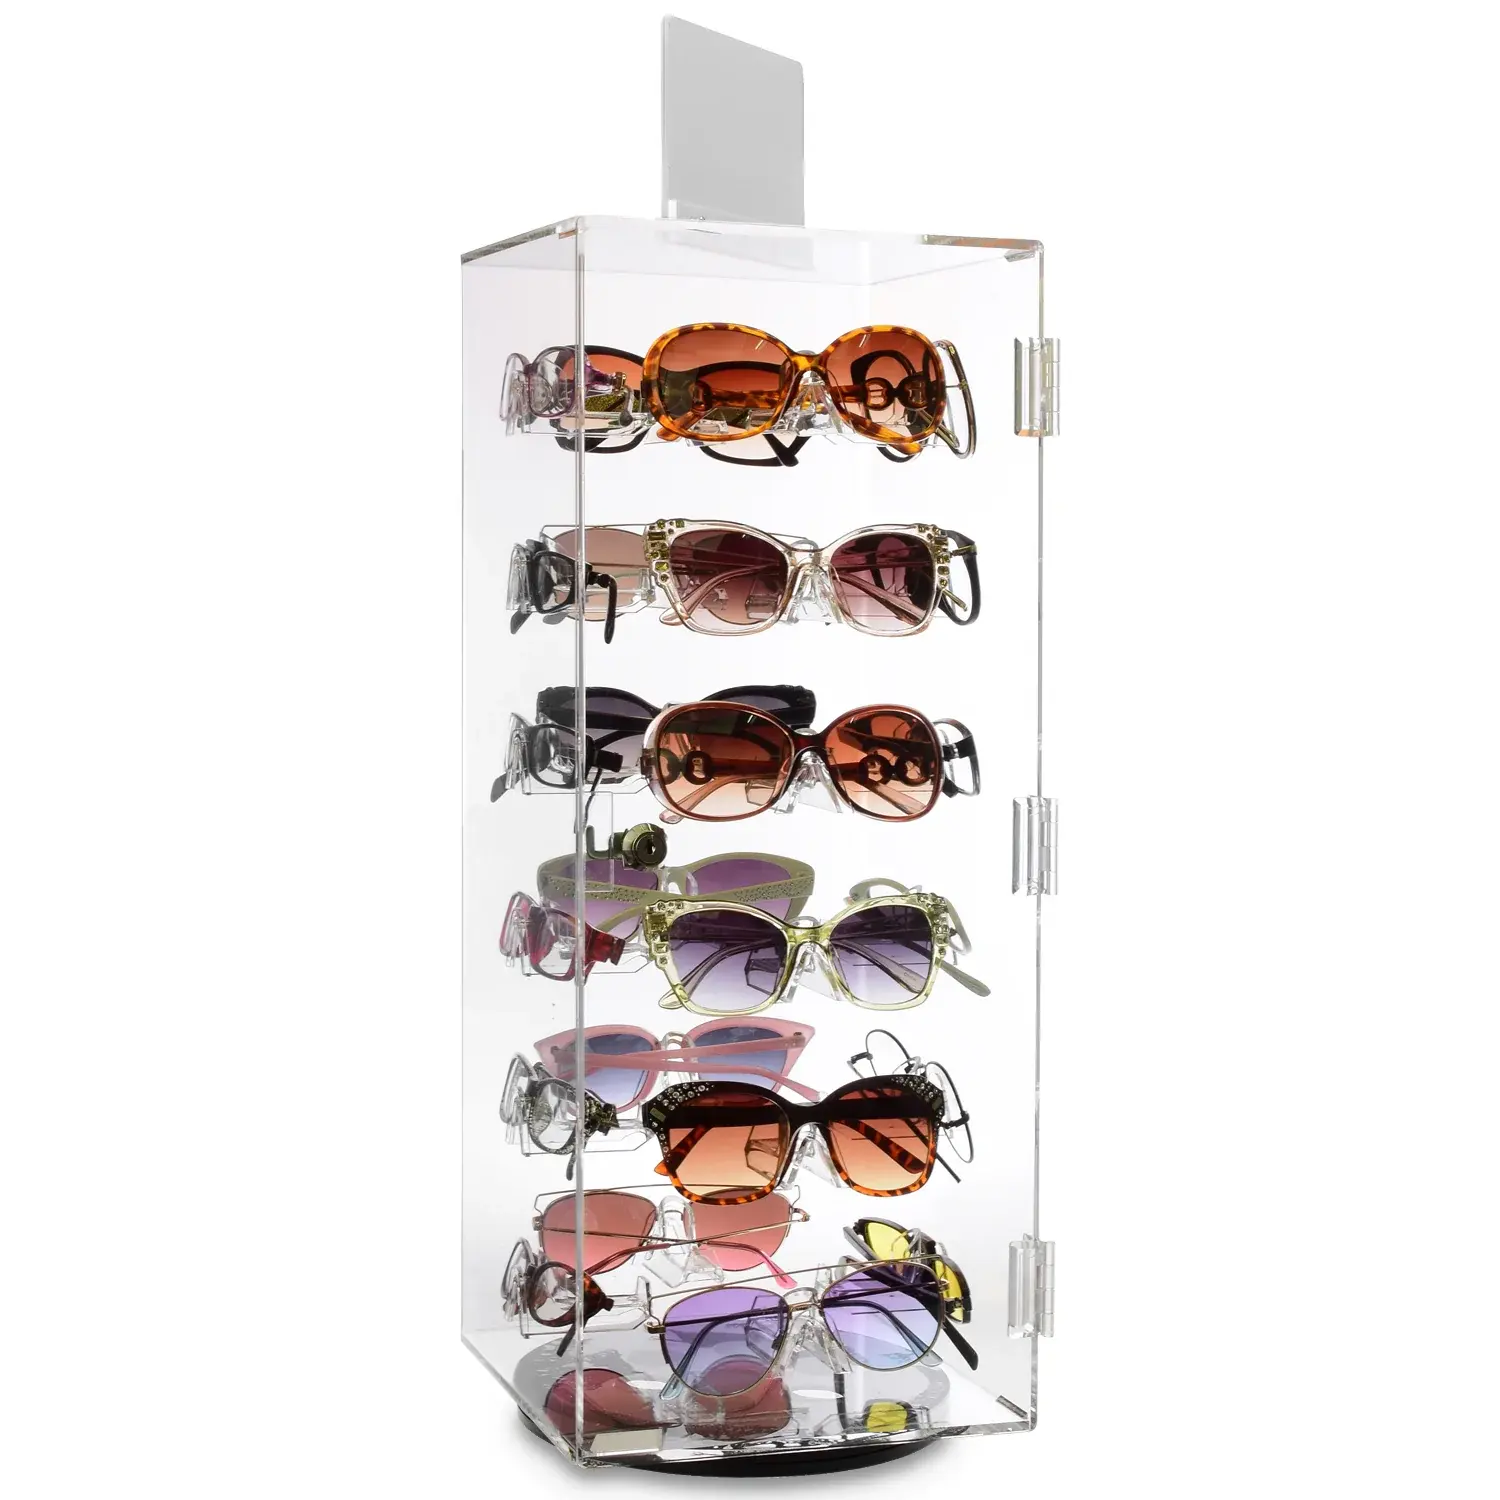 Tinya fábrica tienda óptica exhibición muebles 24 gafas de sol soporte de exhibición 360 giratorio acrílico transparente gafas vitrina